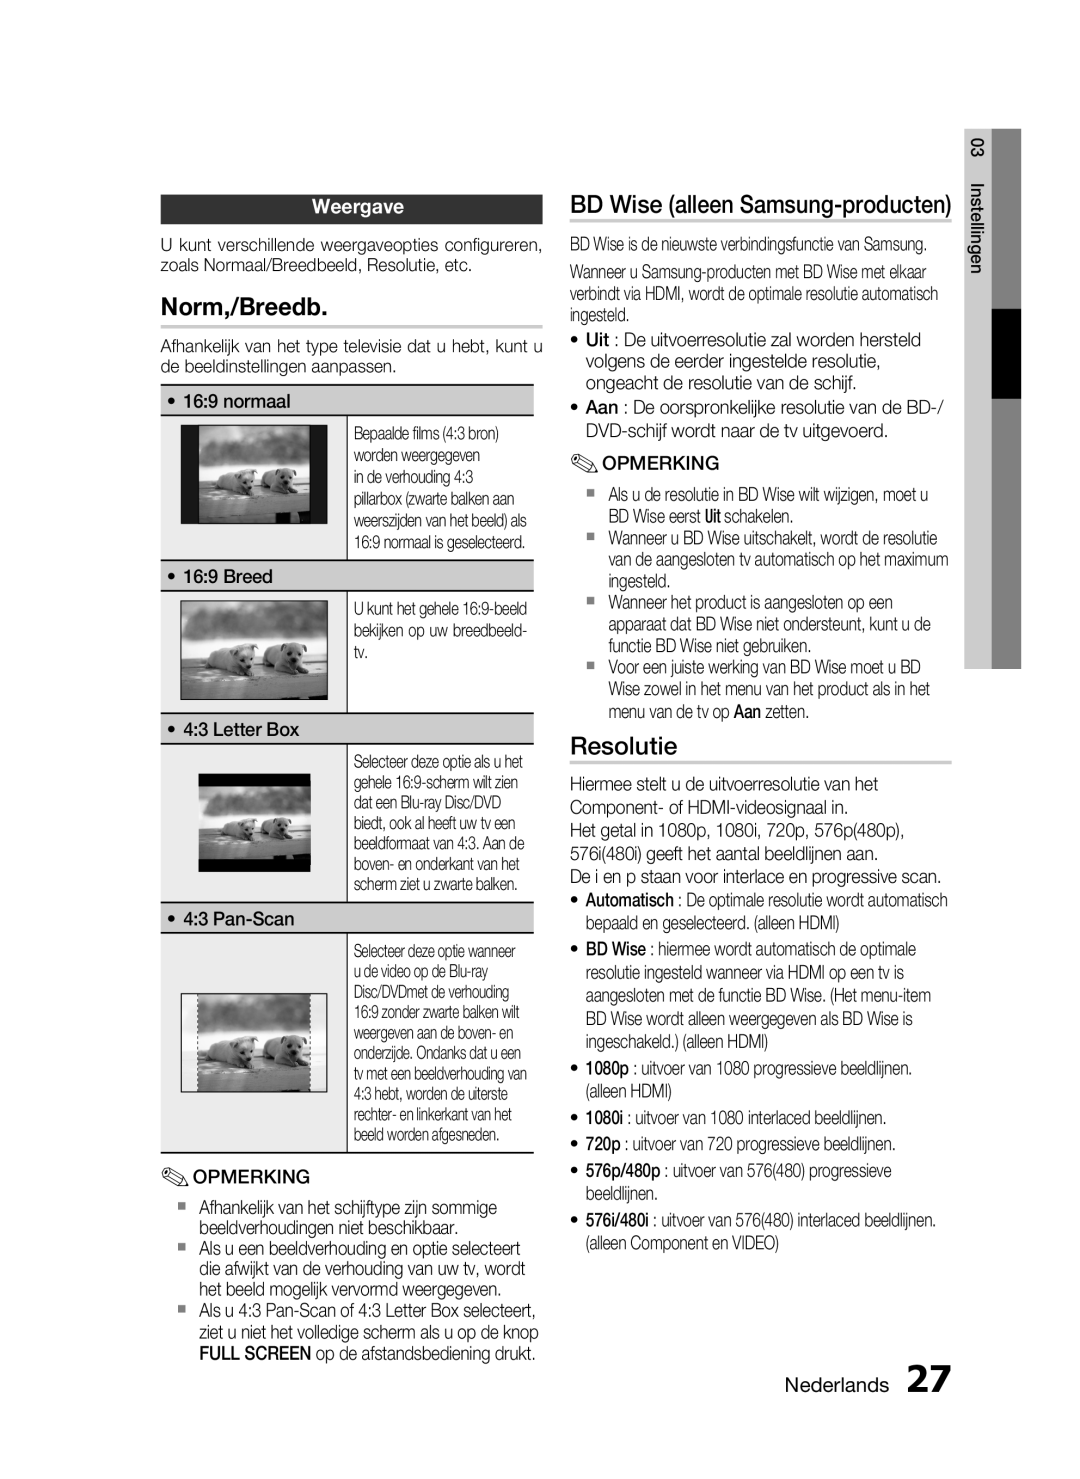 Samsung HT-C6200/XEF manual Norm,/Breedb, Resolutie, BD Wise alleen Samsung-producten, Weergave, Nederlands 